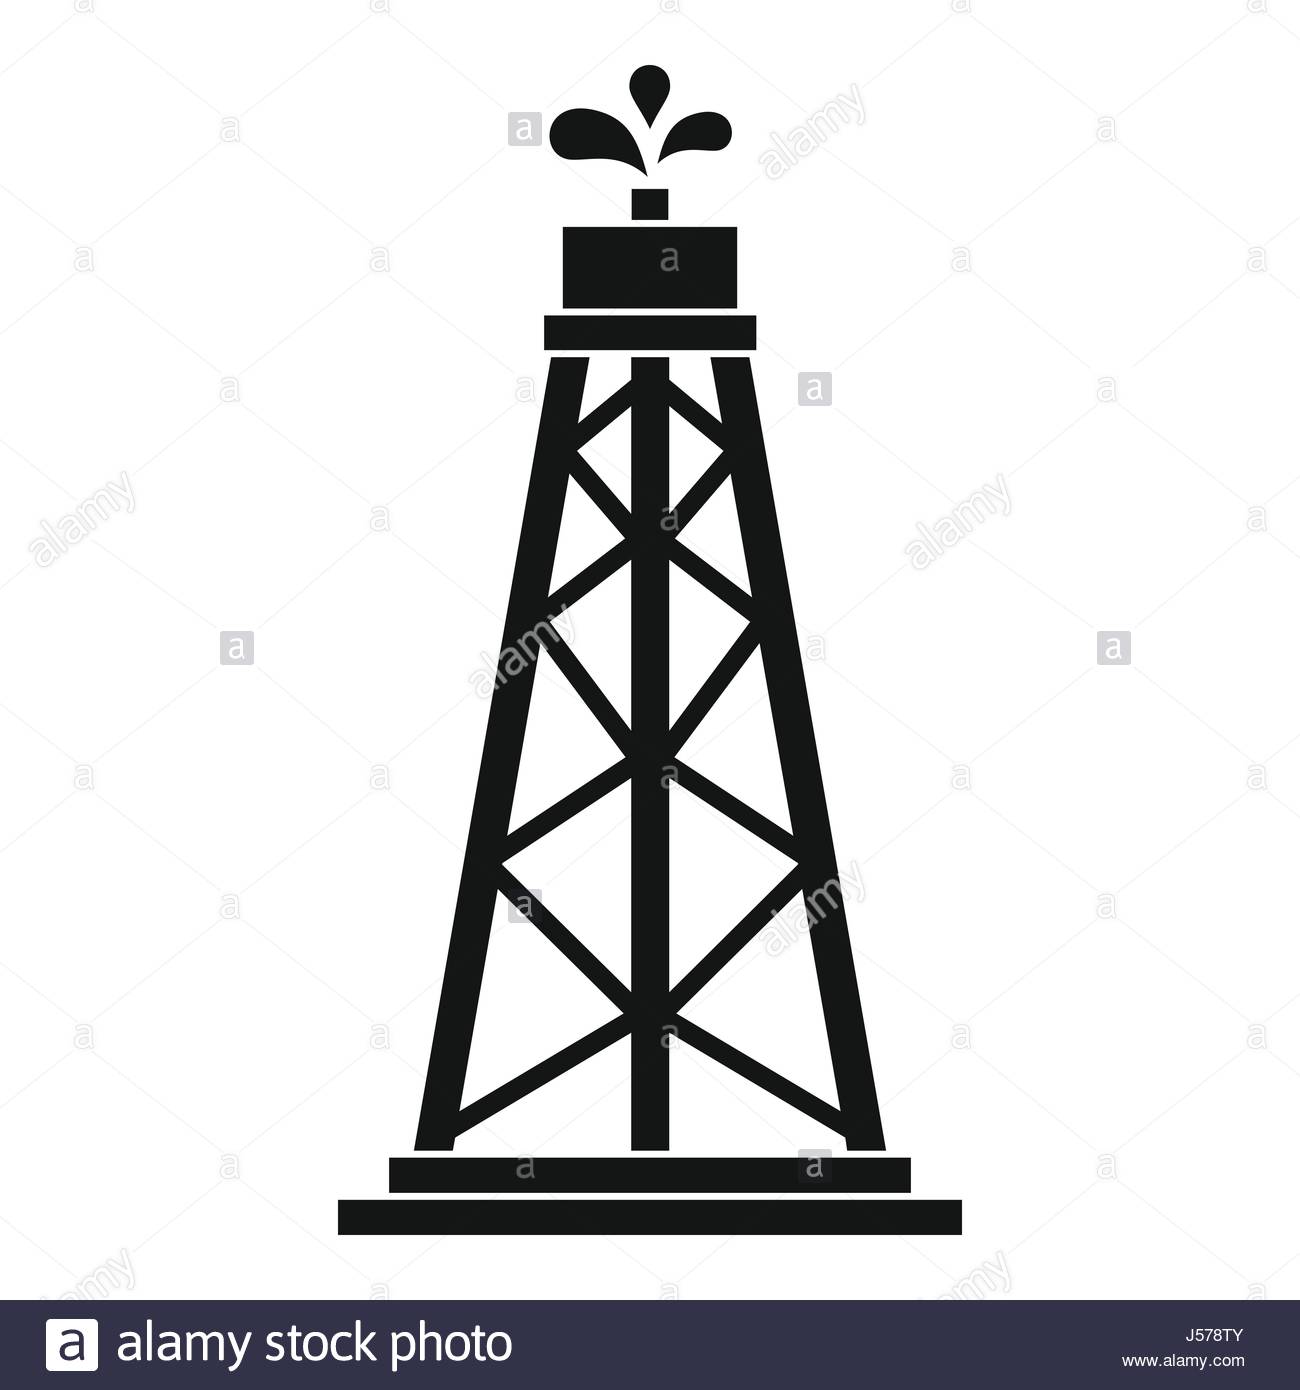 Oil-platform icons | Noun Project